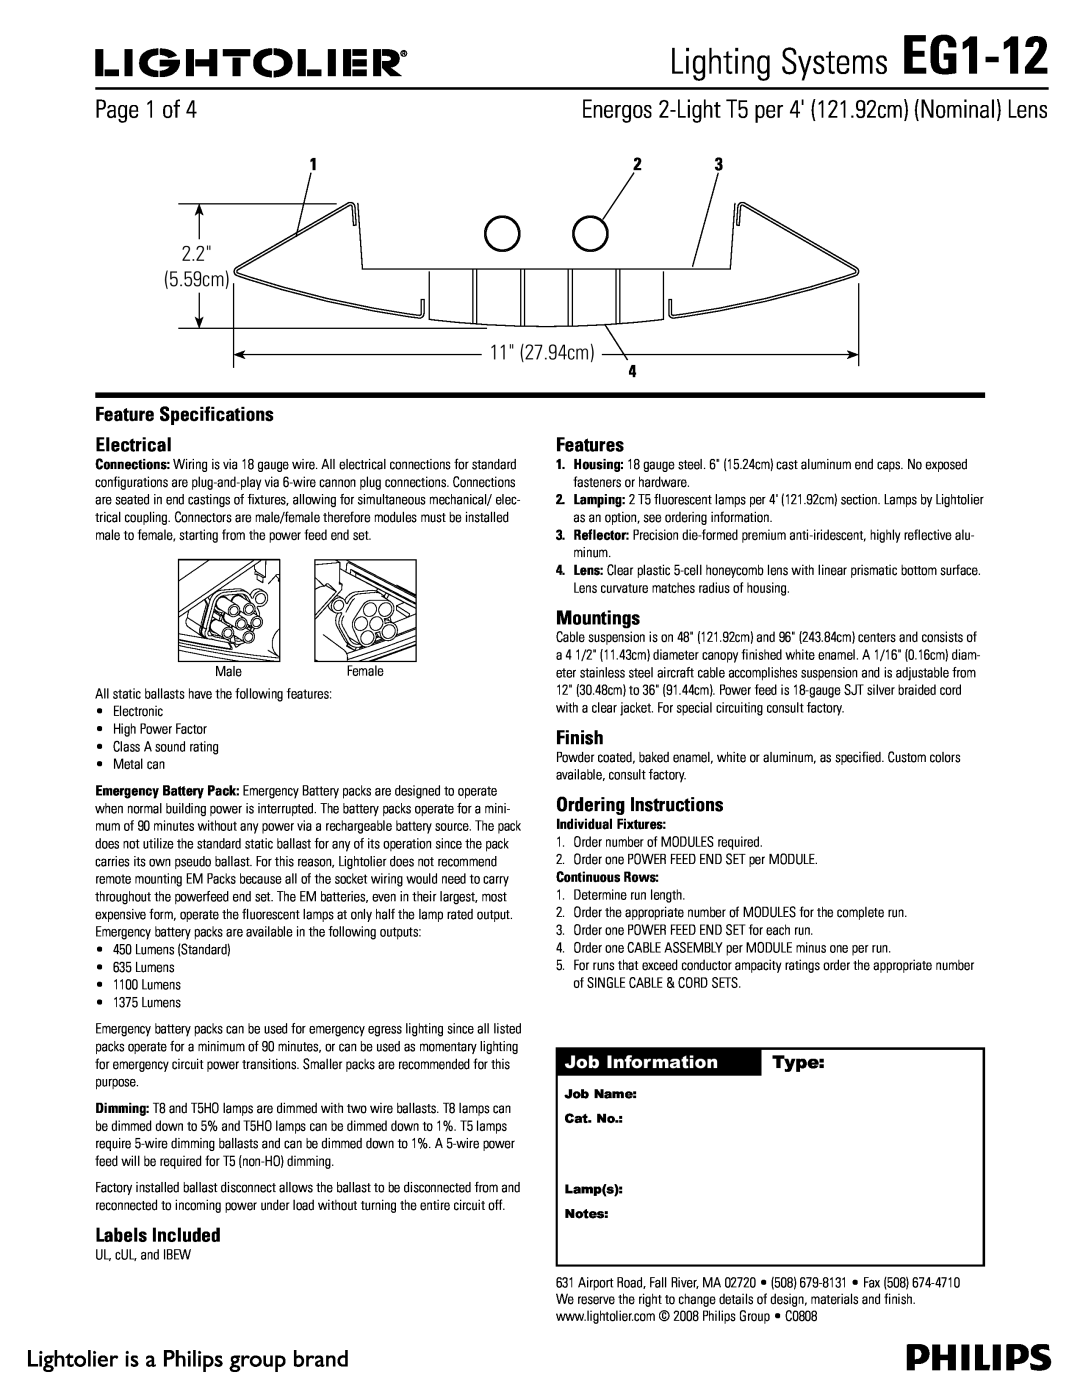 Lightolier specifications Lighting Systems EG1-12,  Dn  Dn, Job Information, Type 